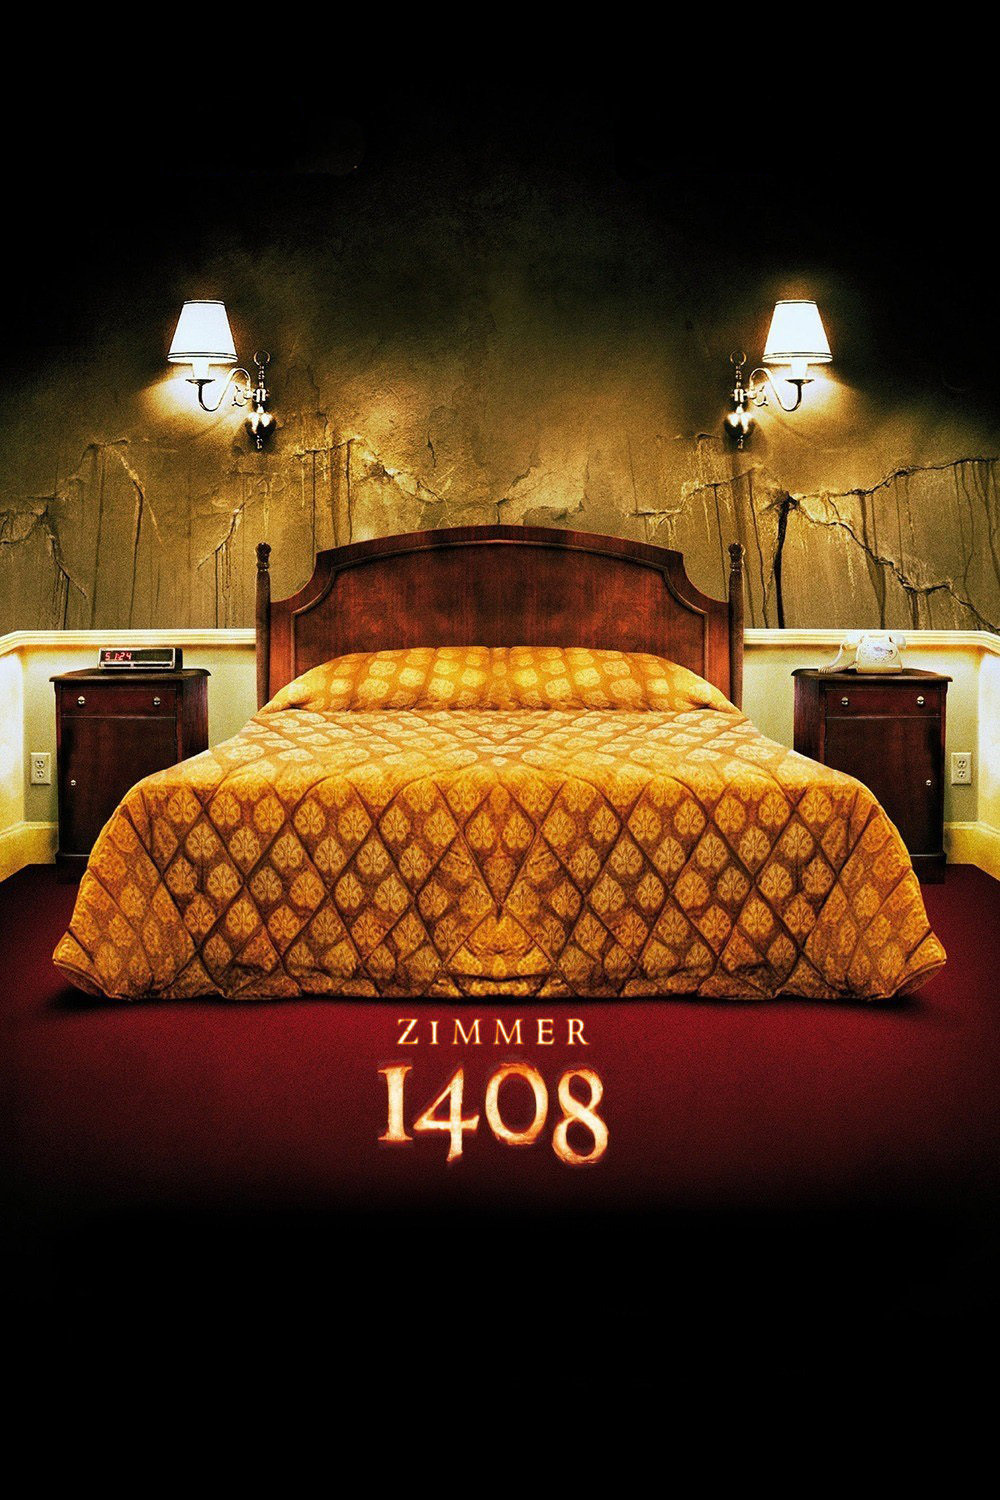 Plakat von "Zimmer 1408"